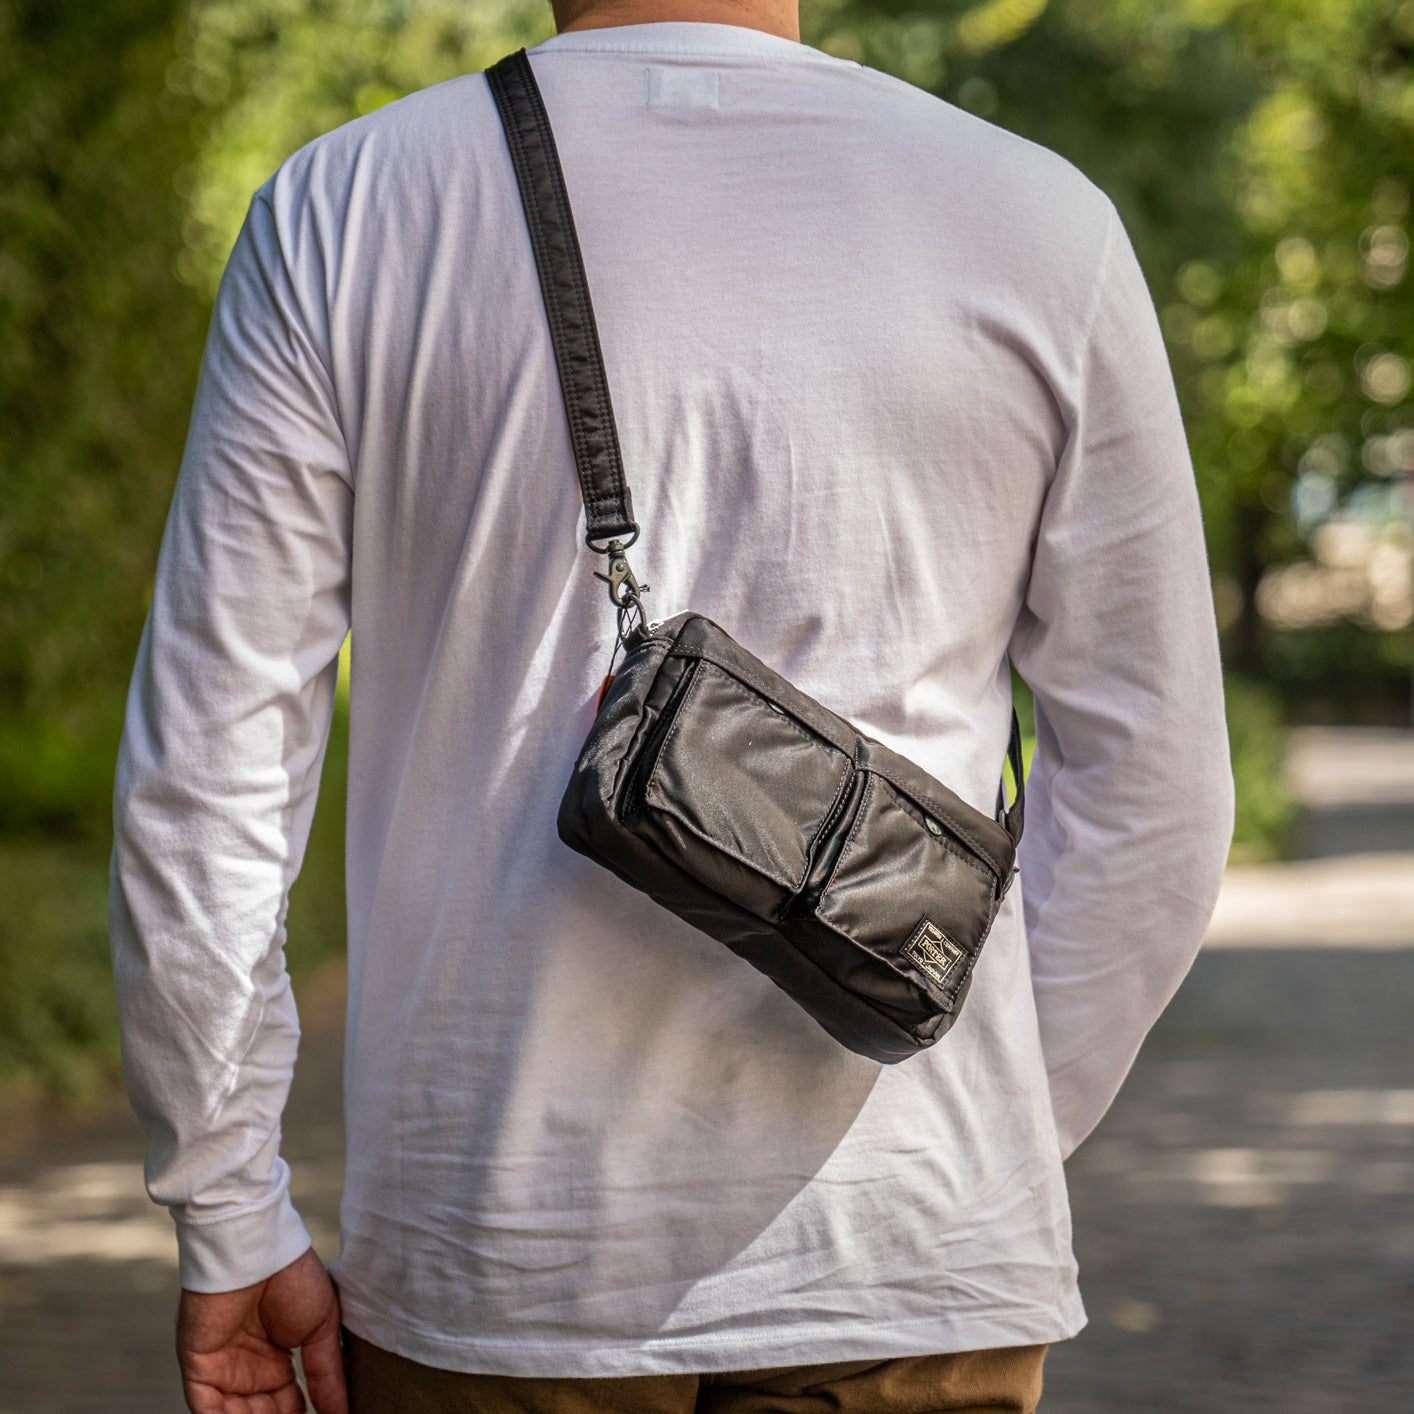 Porter-Yoshida & Co. - Force Shoulder Bag